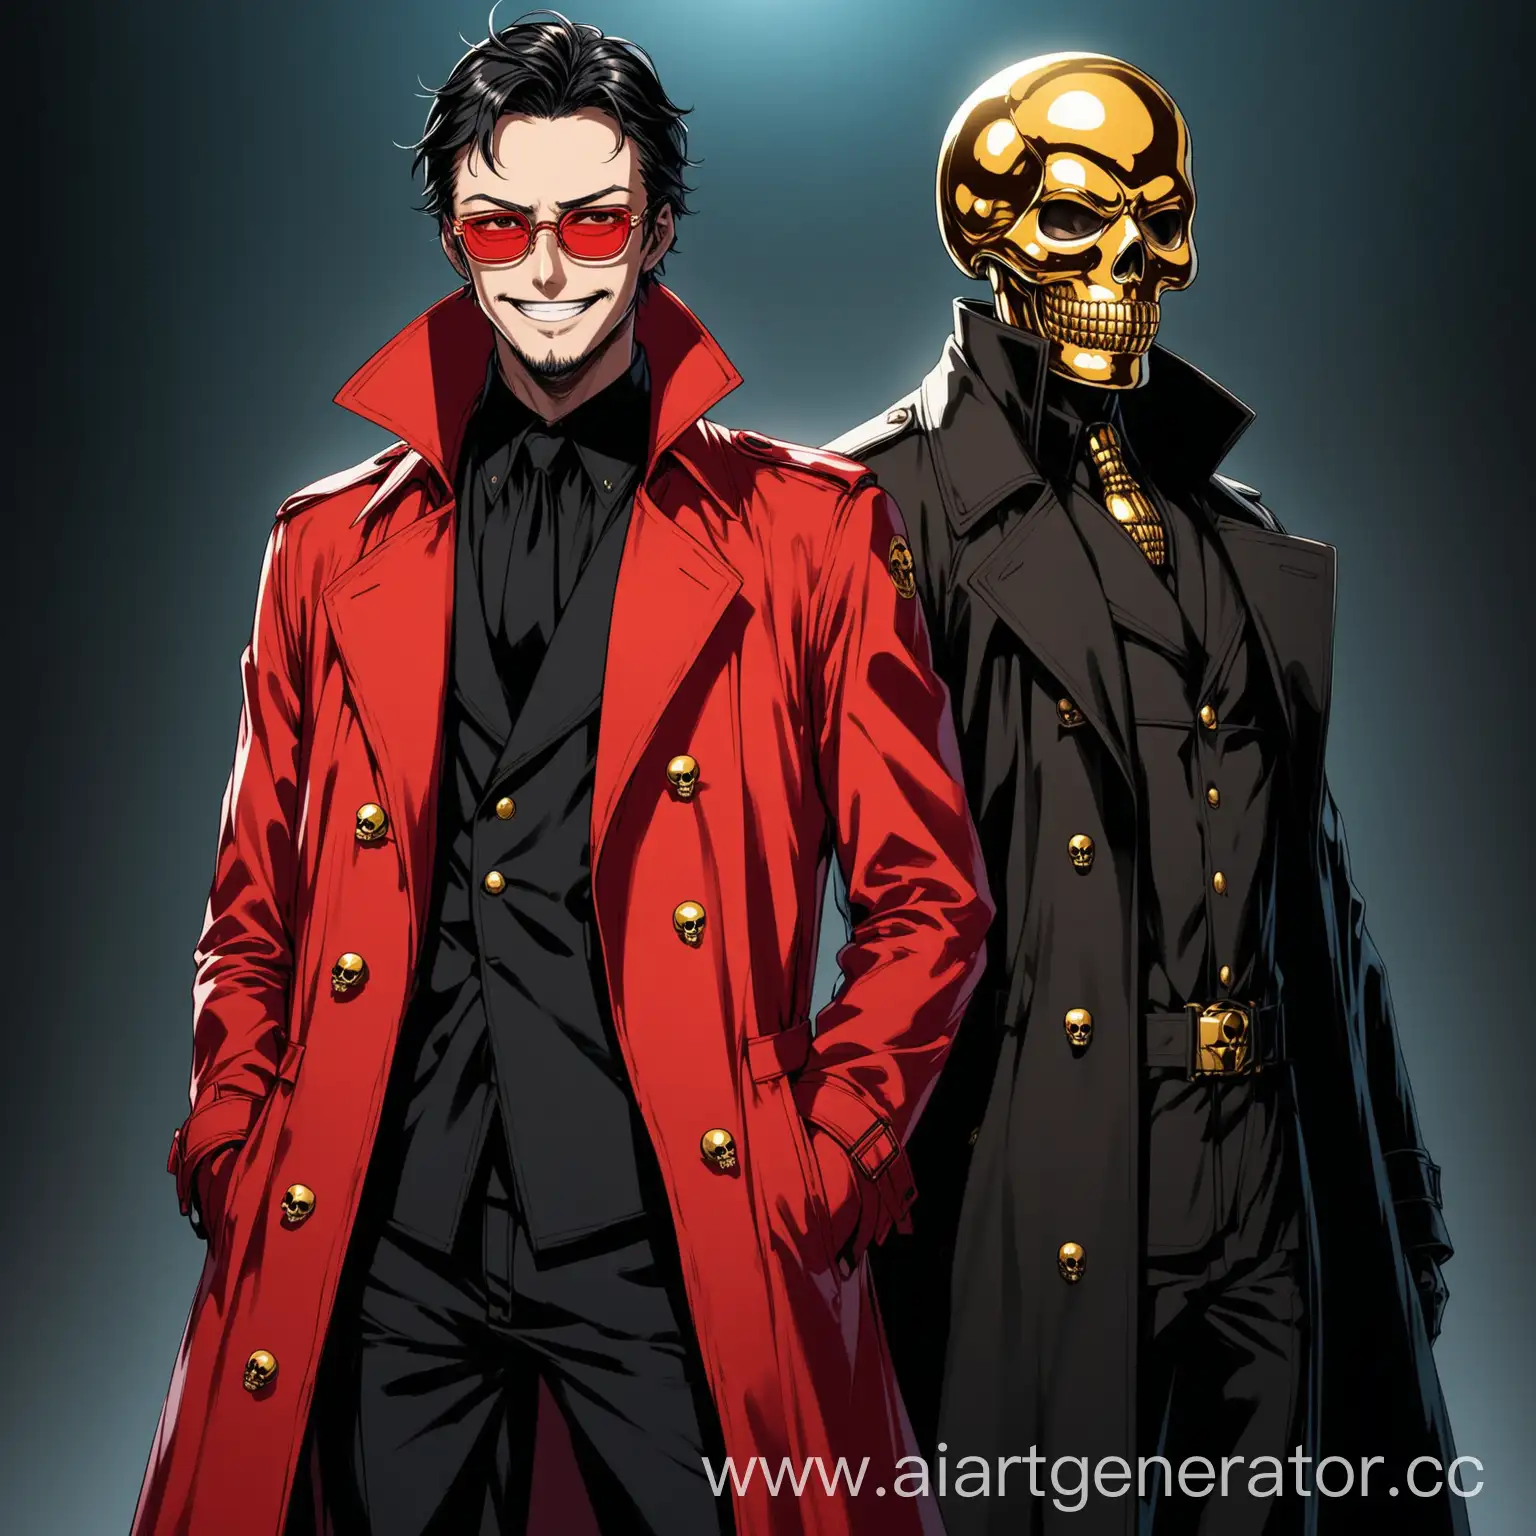 Аниме(Оскар-человек в черном пальто и золотой маске черепа) и Рик(человек в алом пальто и алых очках,безумная улыбка), стоят рядом, высокая детализация, высокое разрешение, HD качество, загадочно